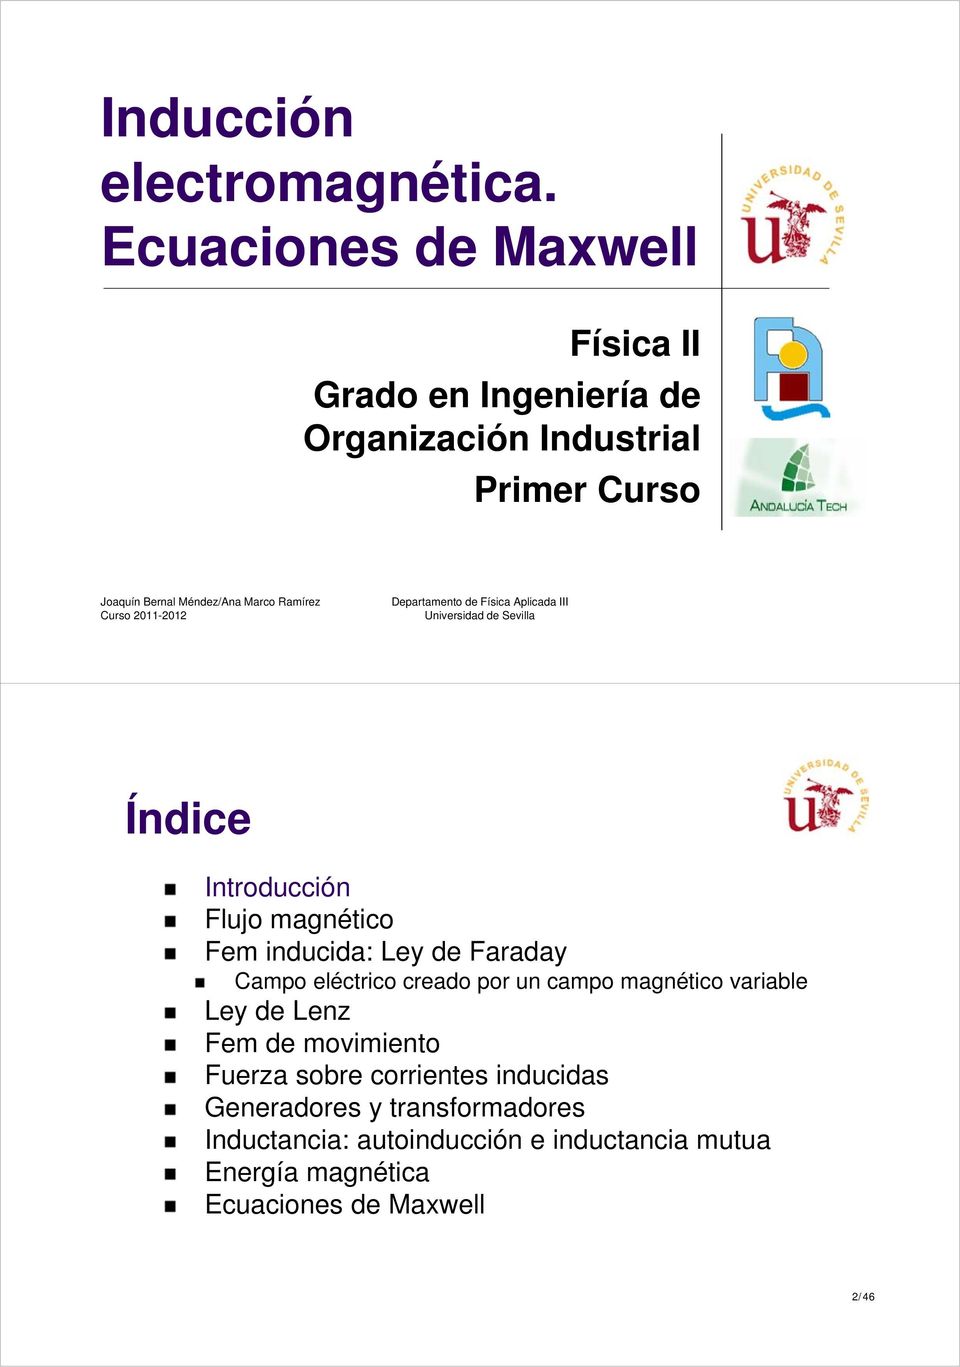 2011-2012 Departaento de Física Aplicada III Universidad de Sevilla Índice Introducción Flujo agnético Fe inducida: Ley